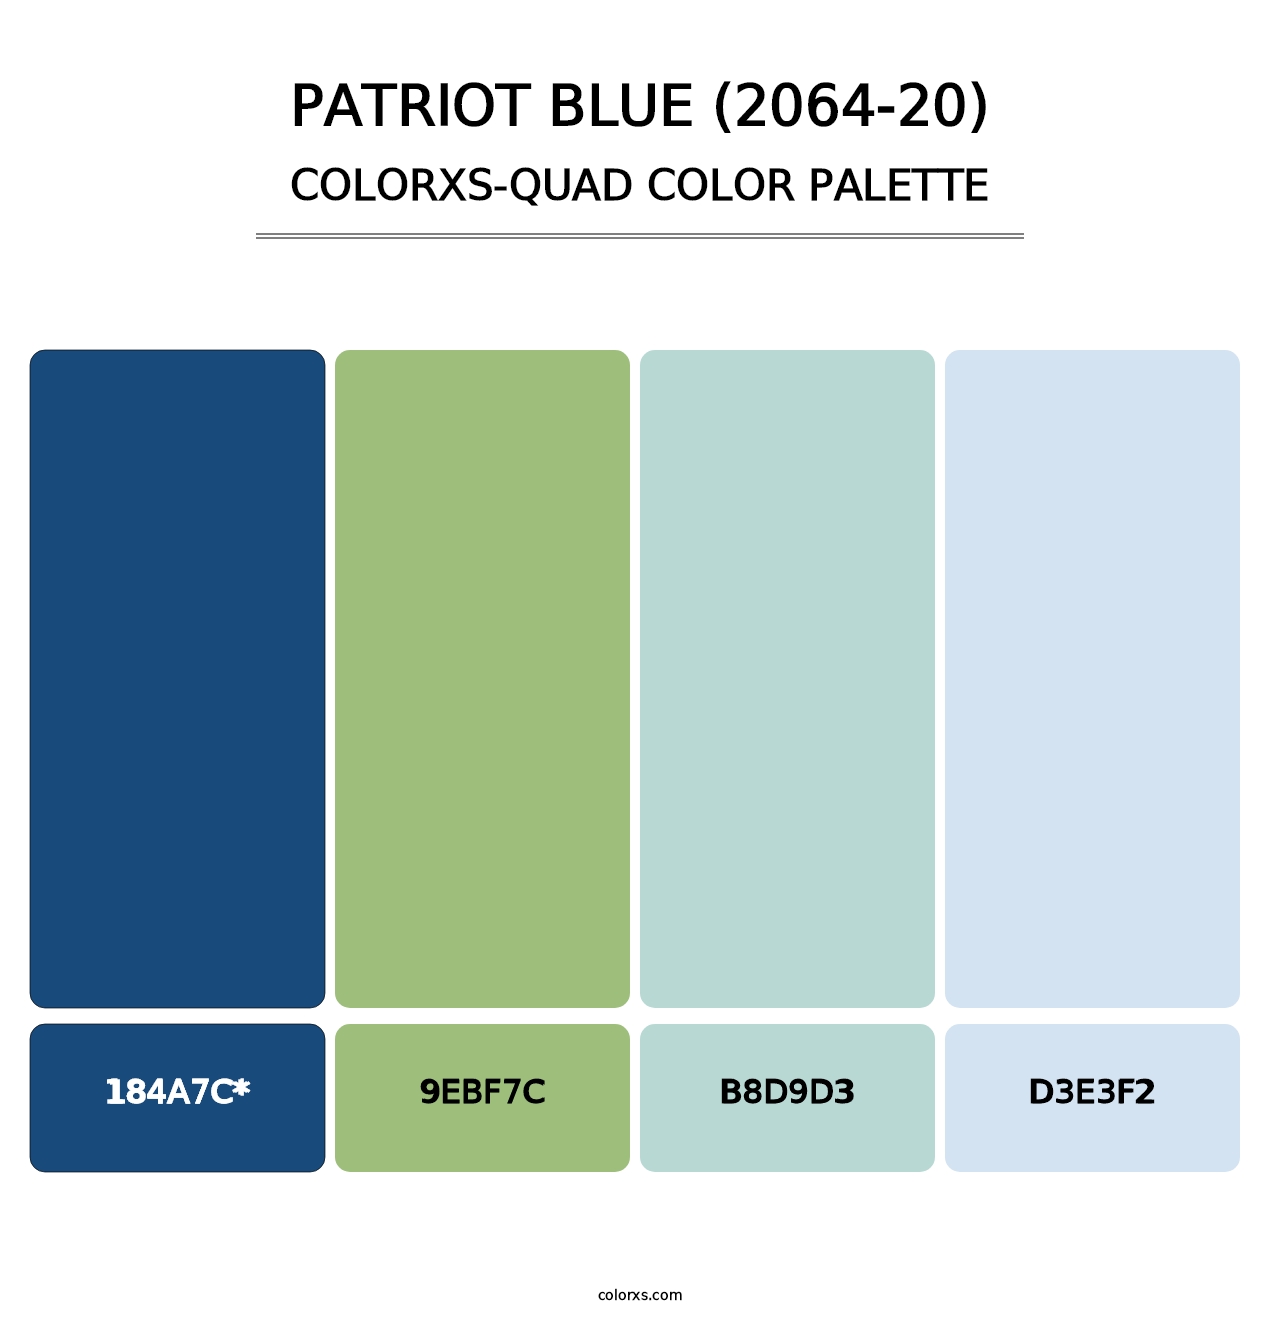 Patriot Blue (2064-20) - Colorxs Quad Palette